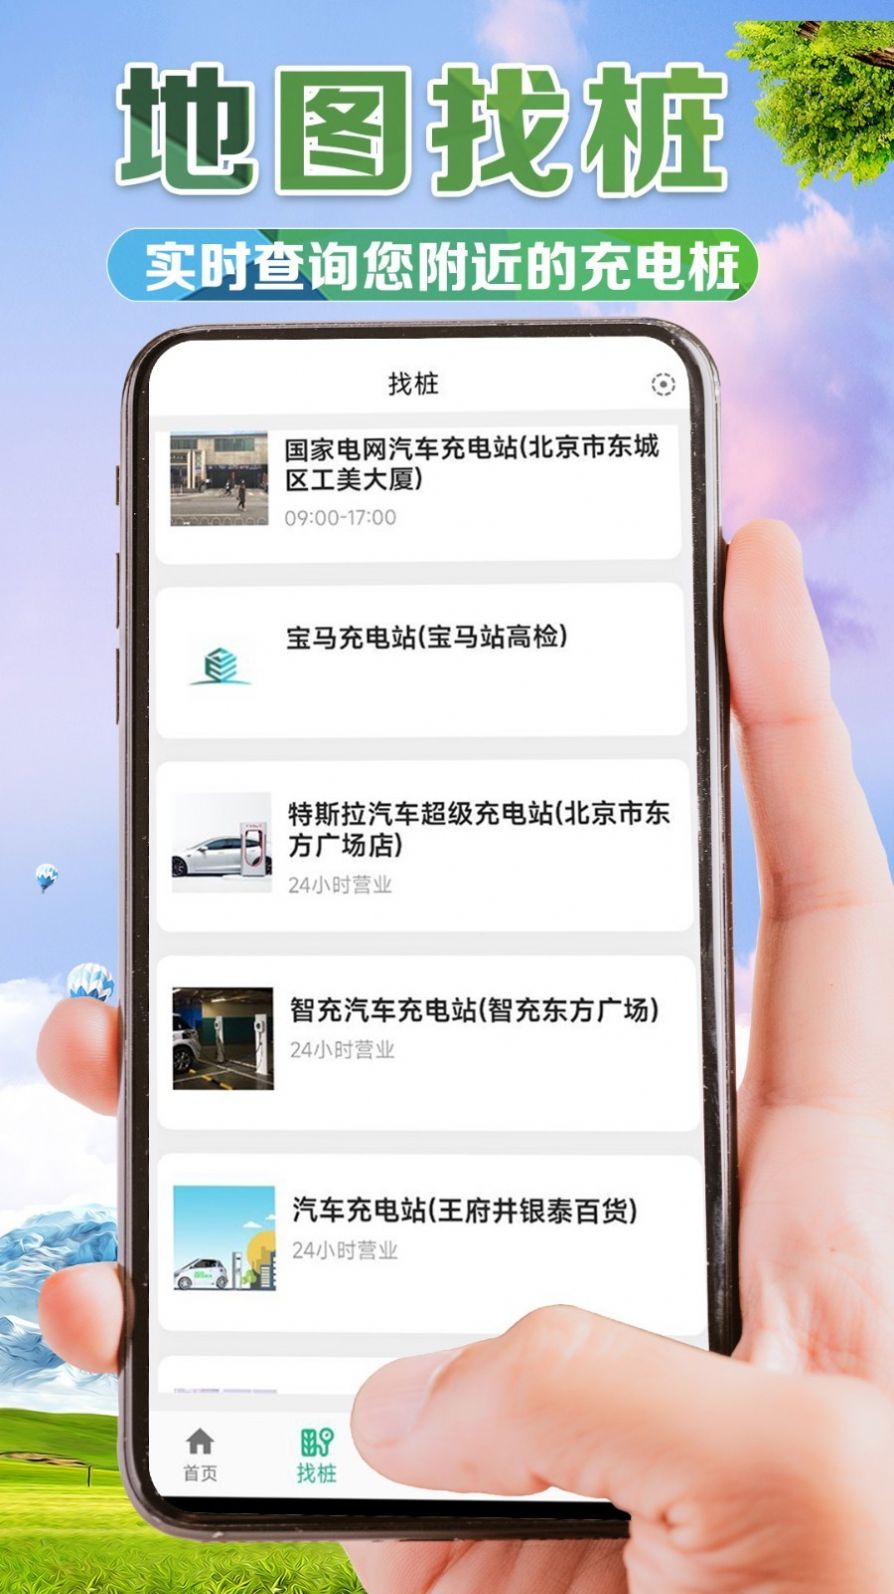 e桩宝app下载,e桩宝app安卓版 v1.0.3